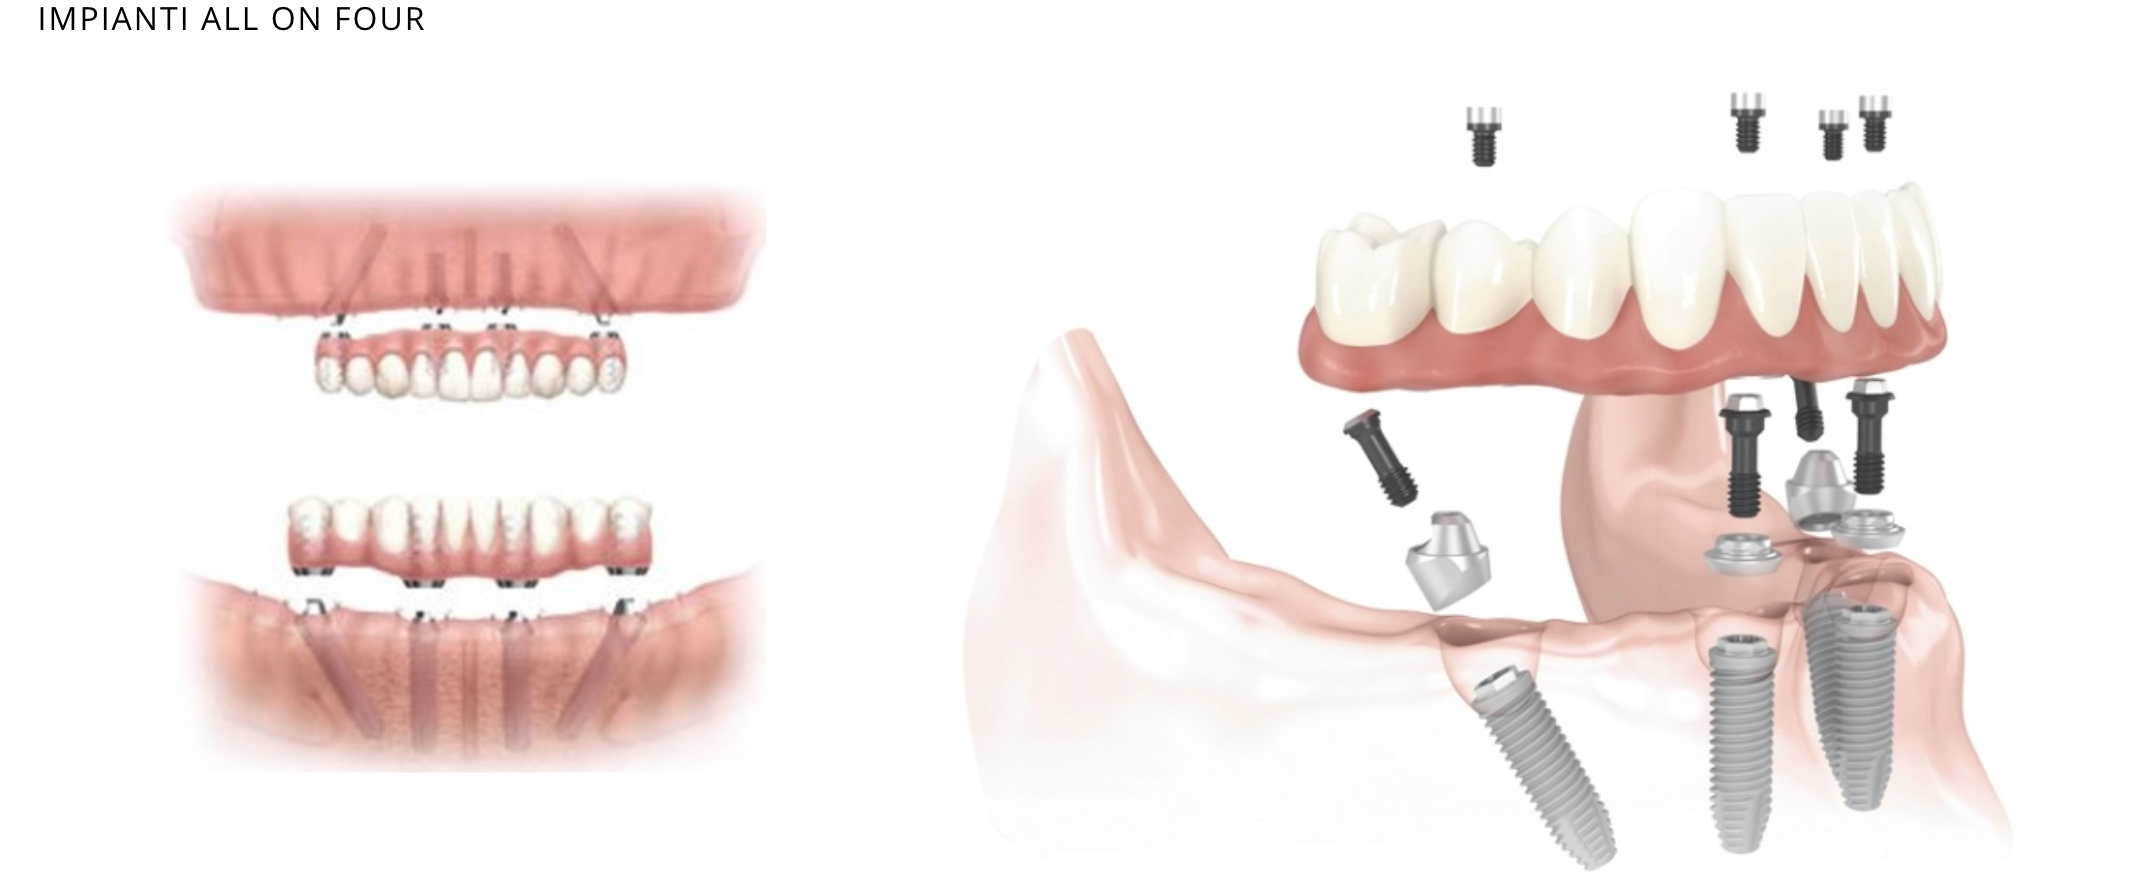 Имплантация зубов all on 4. Имплантация зубов по технологии «all on 4». All on 4 имплантация Нобель. Имплантация sup aznona com